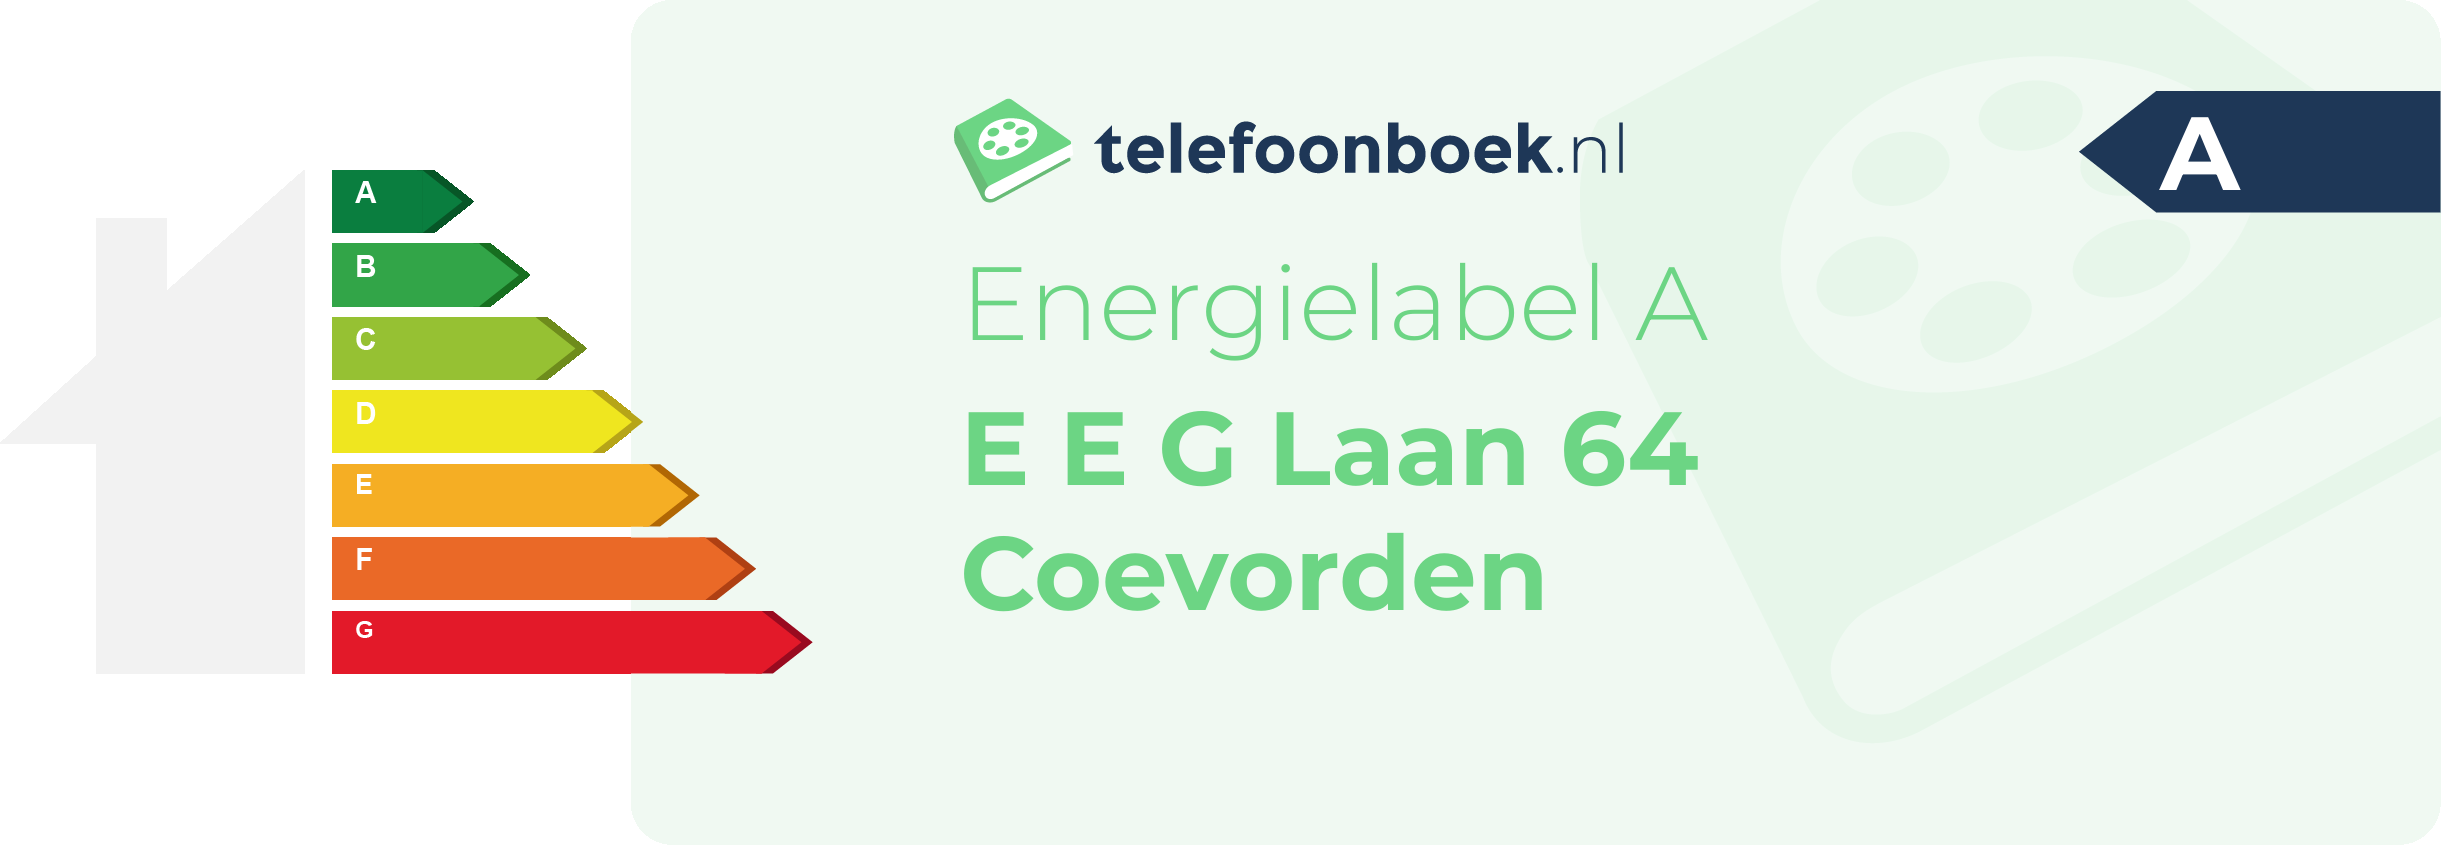 Energielabel E E G Laan 64 Coevorden